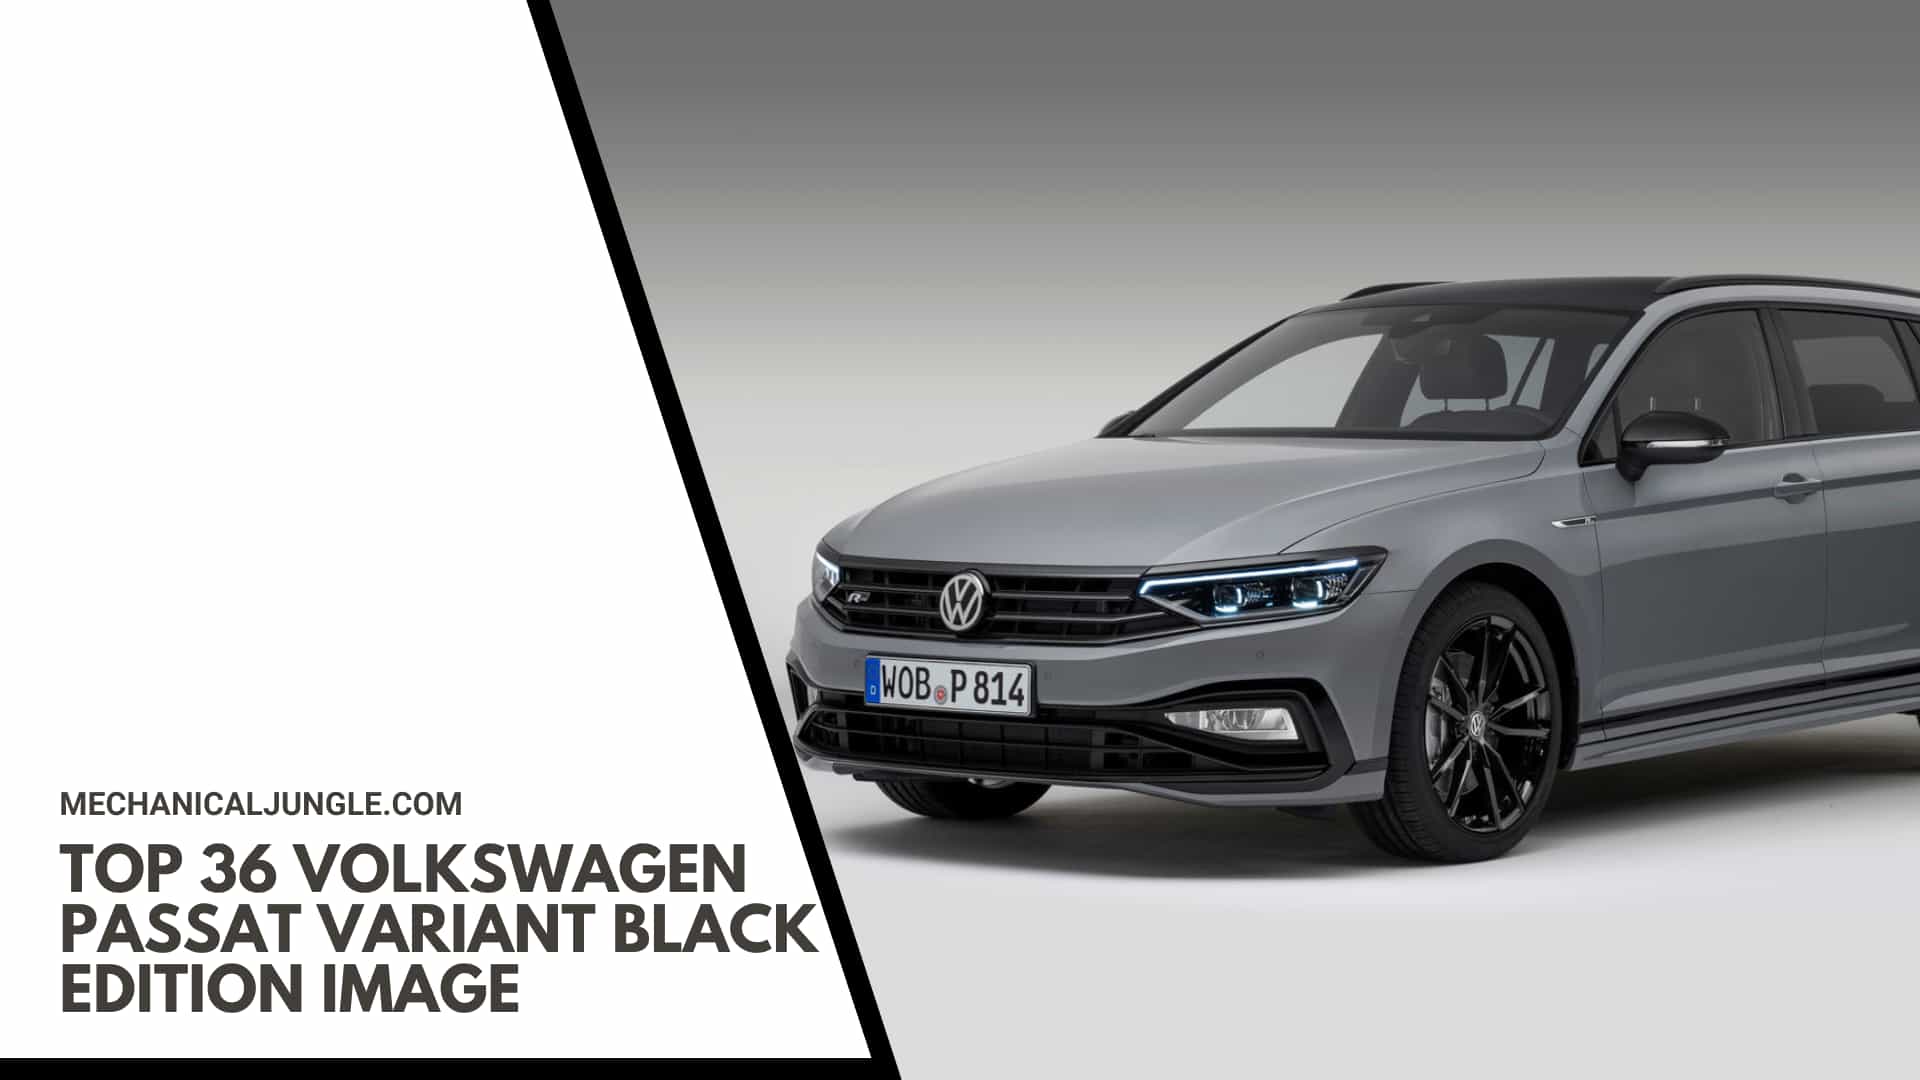 Top 36 Volkswagen Passat Variant Black Edition Image